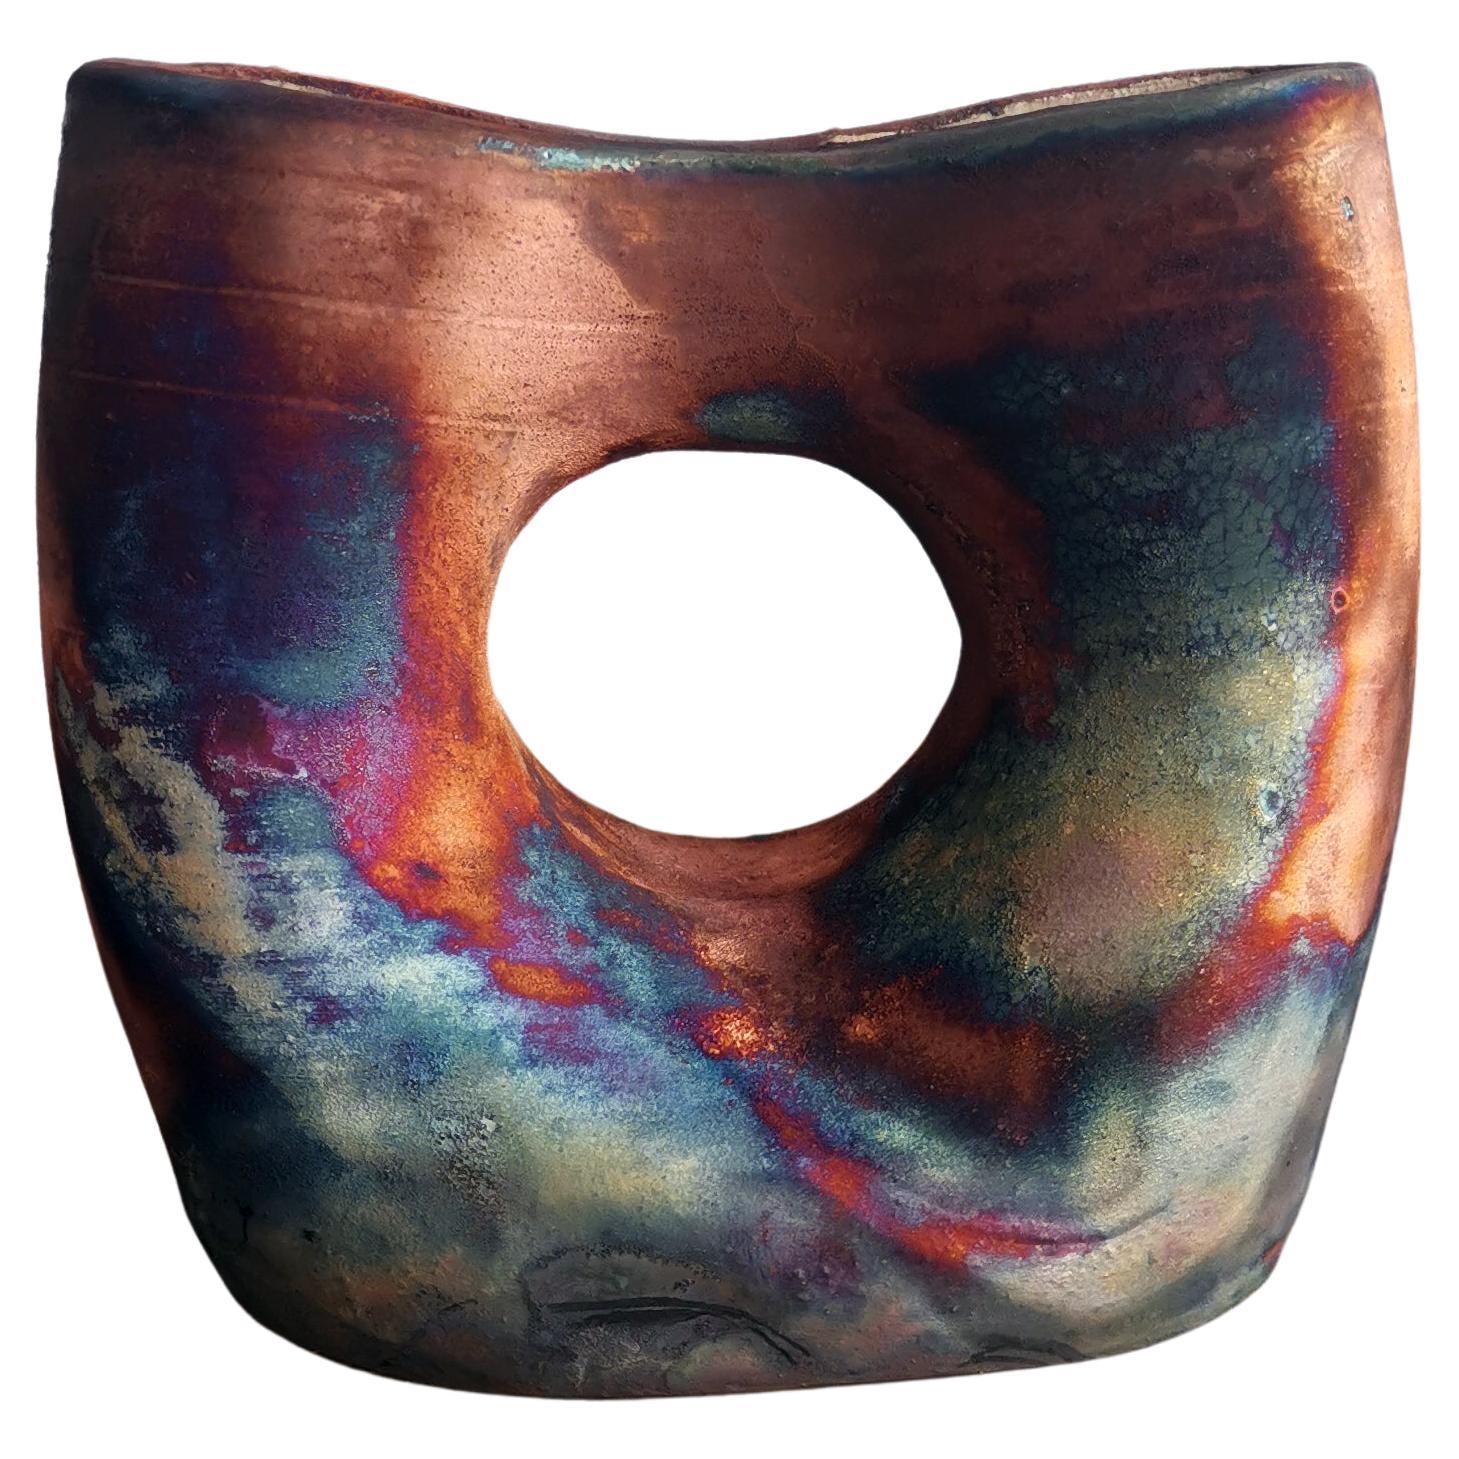 Dokutsu Raku-Vase aus geflammter Keramik - Full Copper Matt - Handgefertigtes Keramik-Hausschmuck